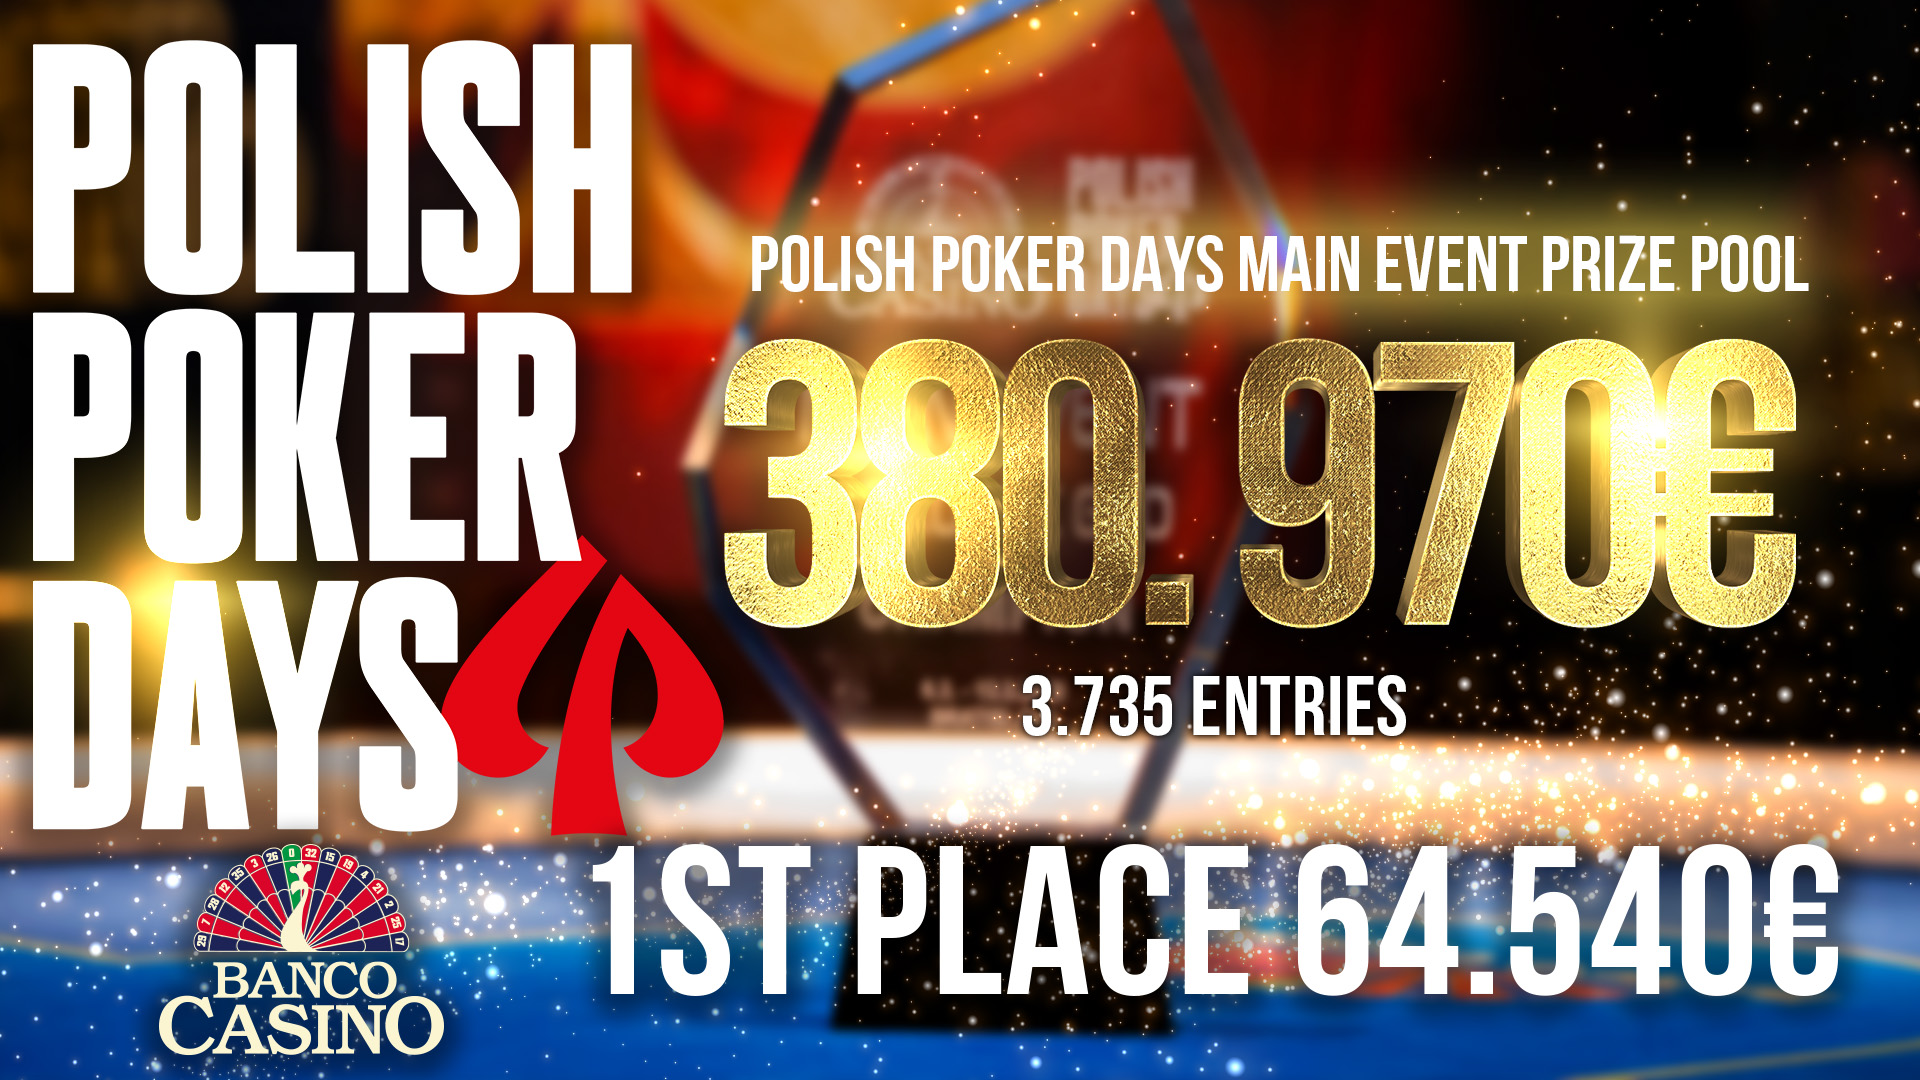 Polish Poker Days v Banco Casino s celkovým prizepoolom  650.000€ a Main Event s 3.735 entries dnes hľadá šampióna, ktorý si odnesie 64.540€!